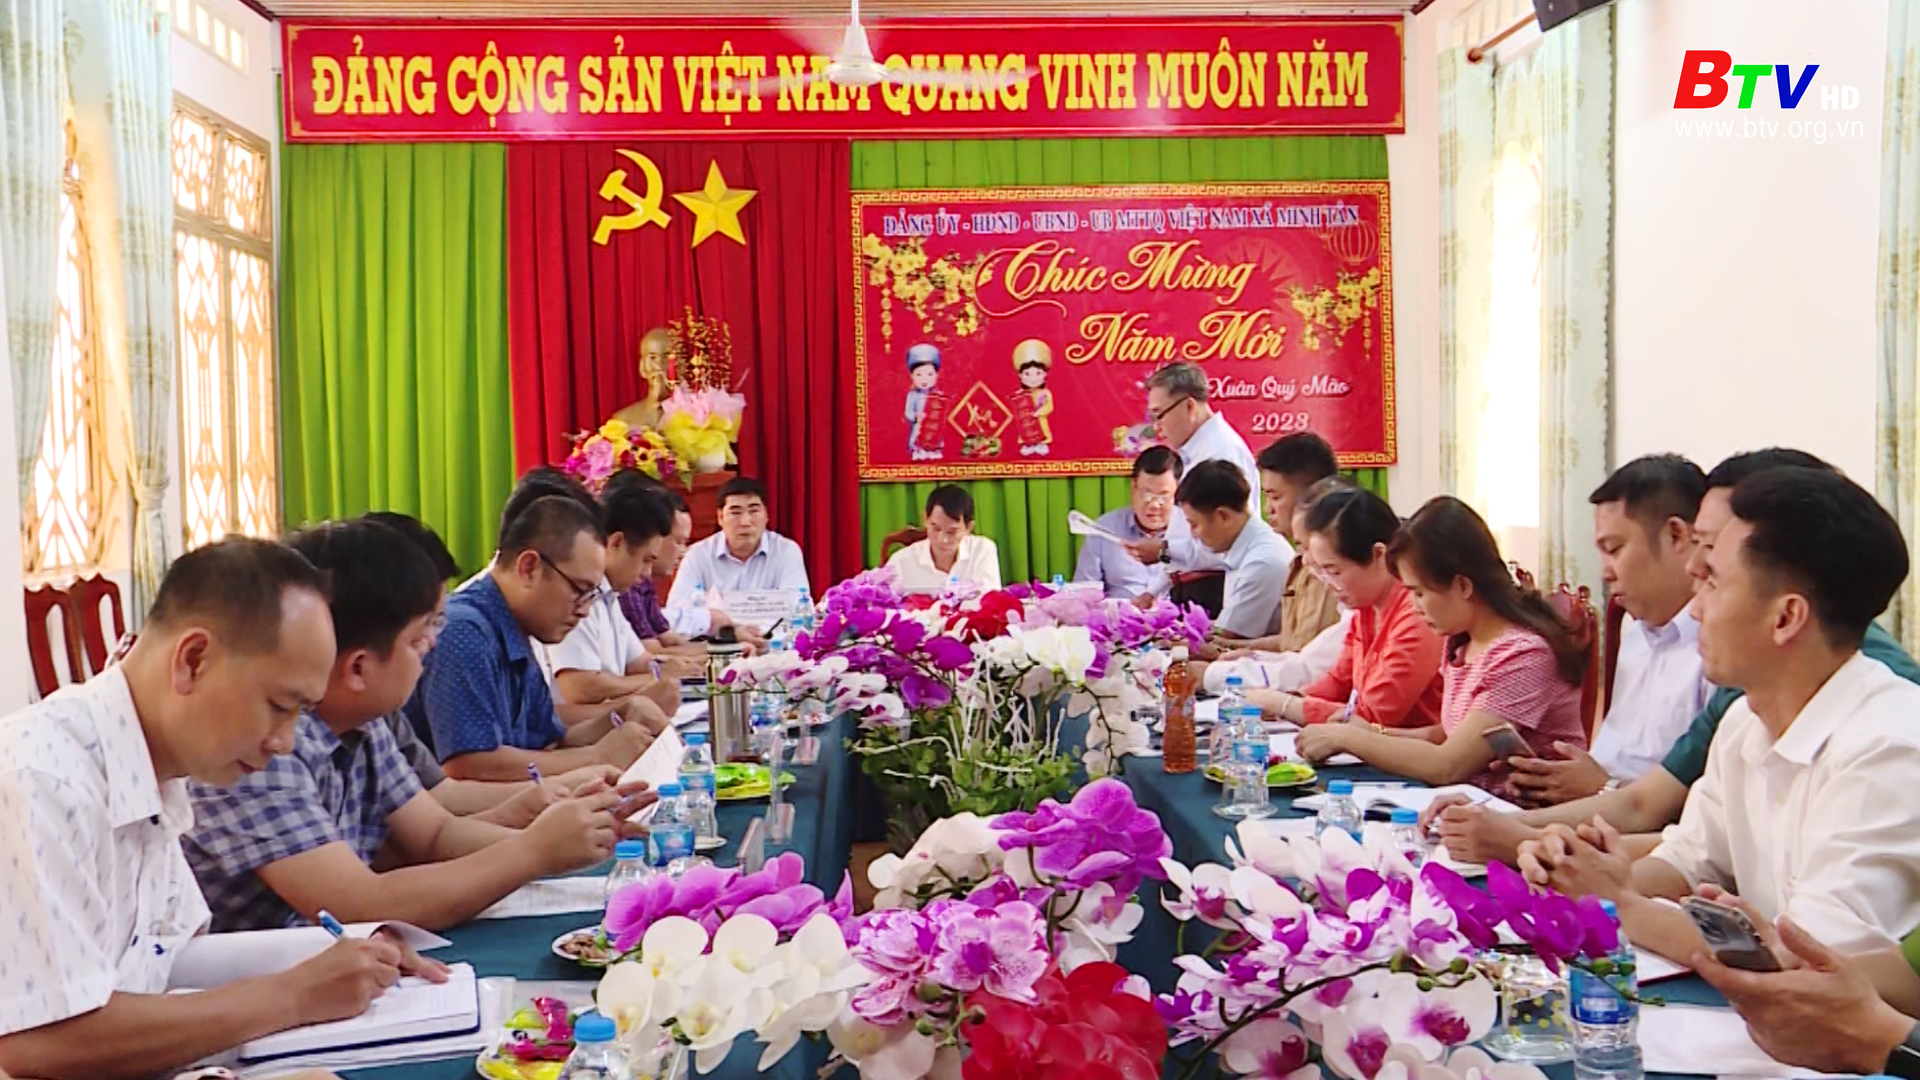 Đảng bộ xã Minh Tân huyện Dầu Tiếng lãnh đạo xây dựng xã đạt chuẩn nông thôn mới nâng cao